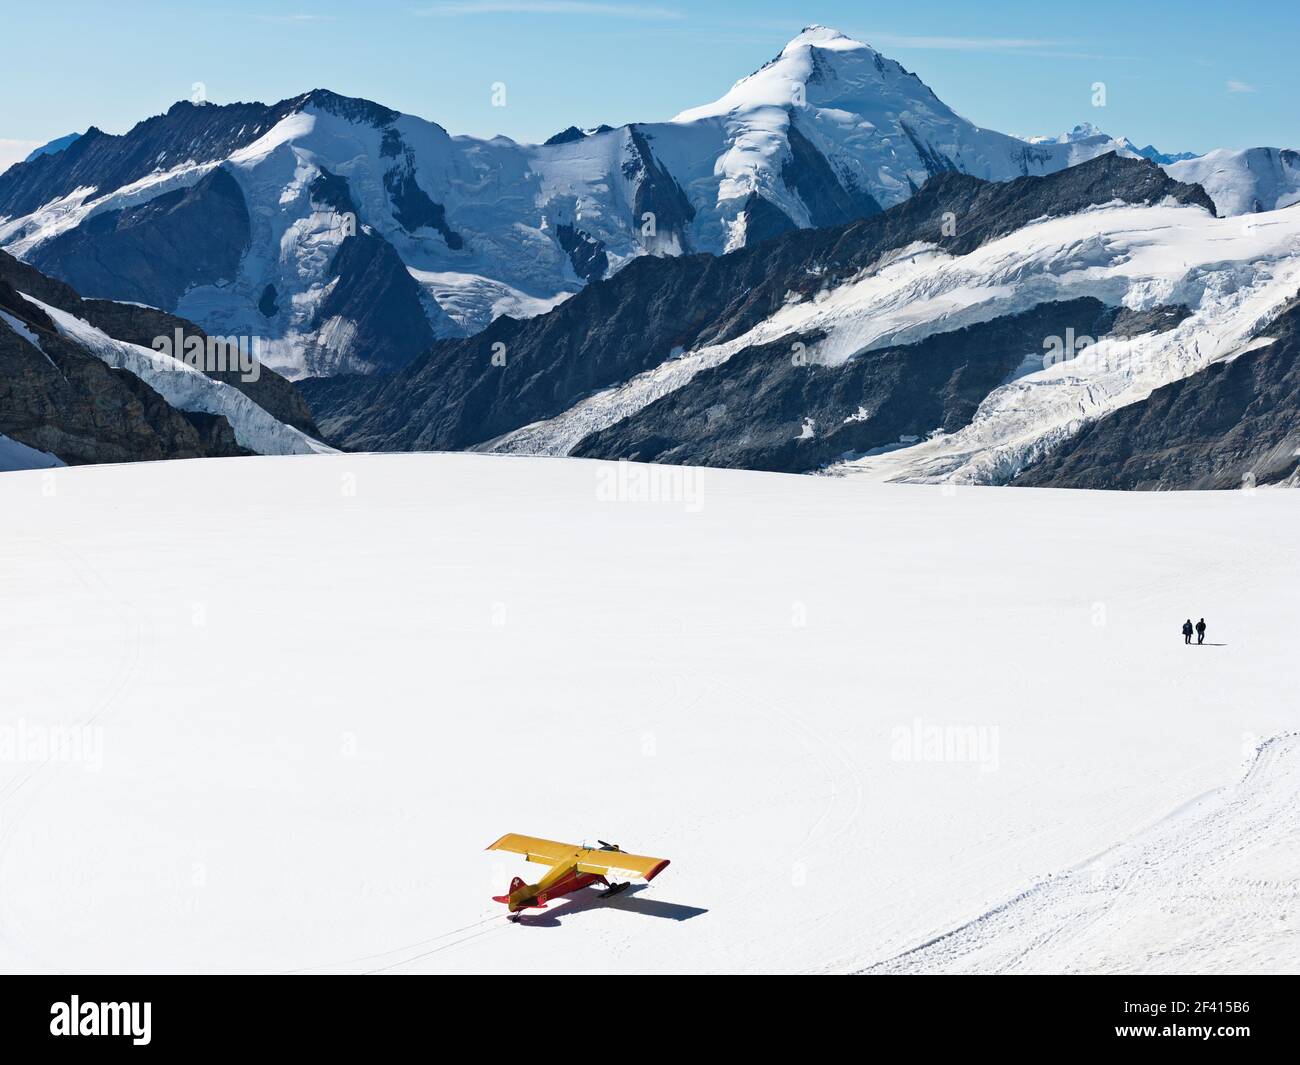 Svizzera Jungfraujoch-Top d'Europa. Aereo sul ghiacciaio con montagne sullo sfondo e due persone a piedi. Il Ghiacciaio del Grande Aletsch. Foto Stock